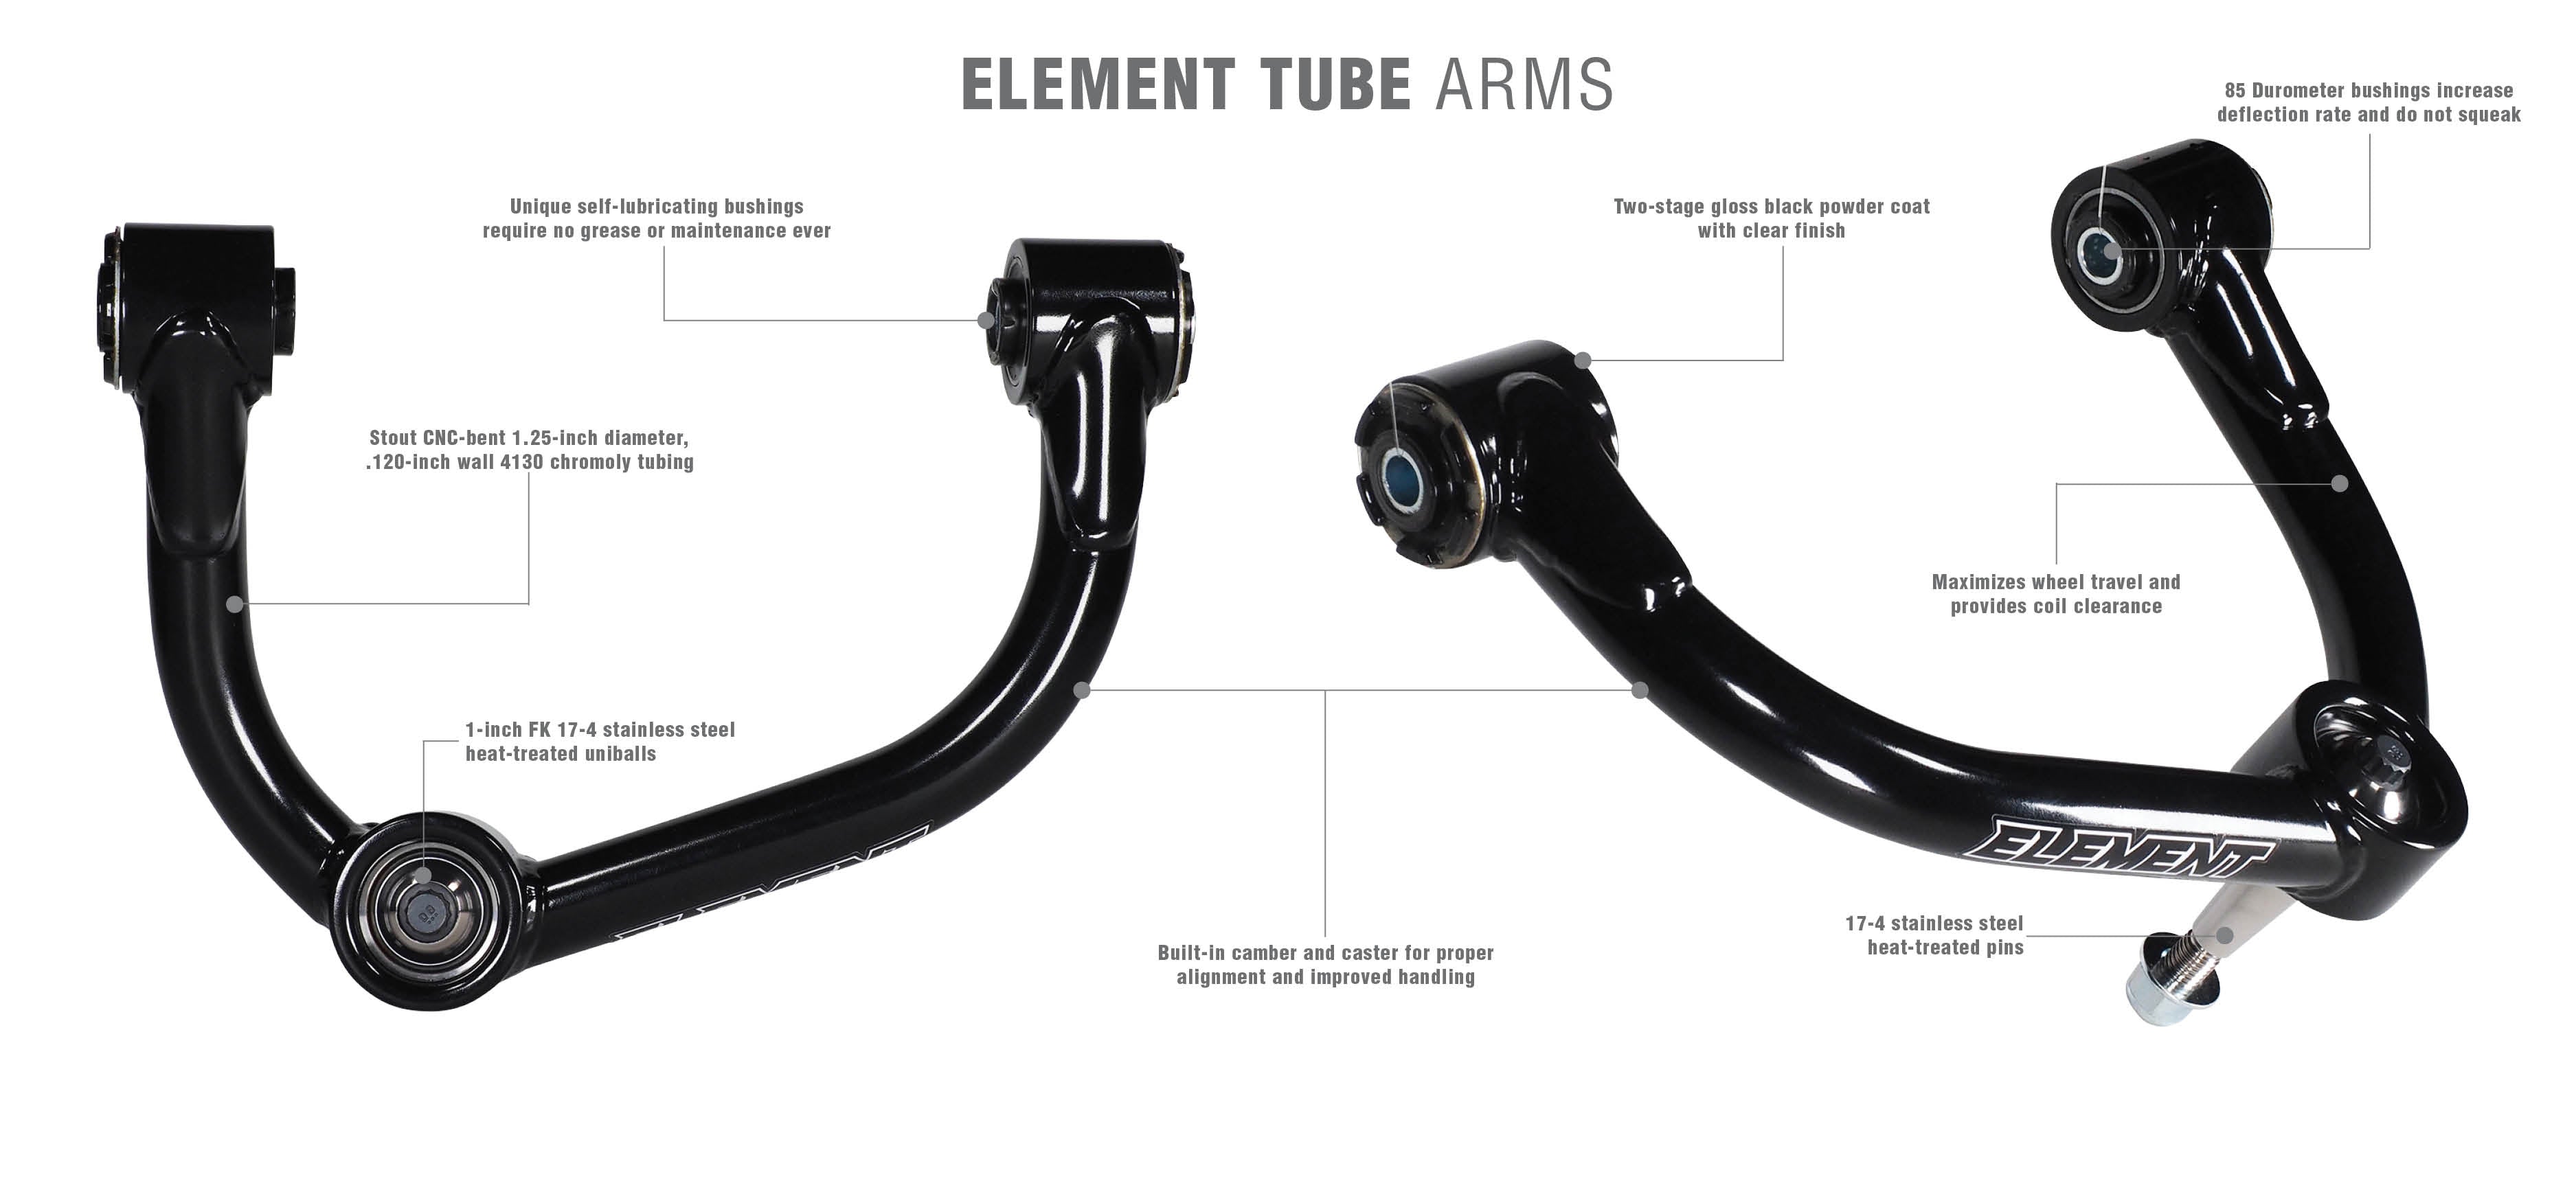 TUBE_Arms-Revised.jpg